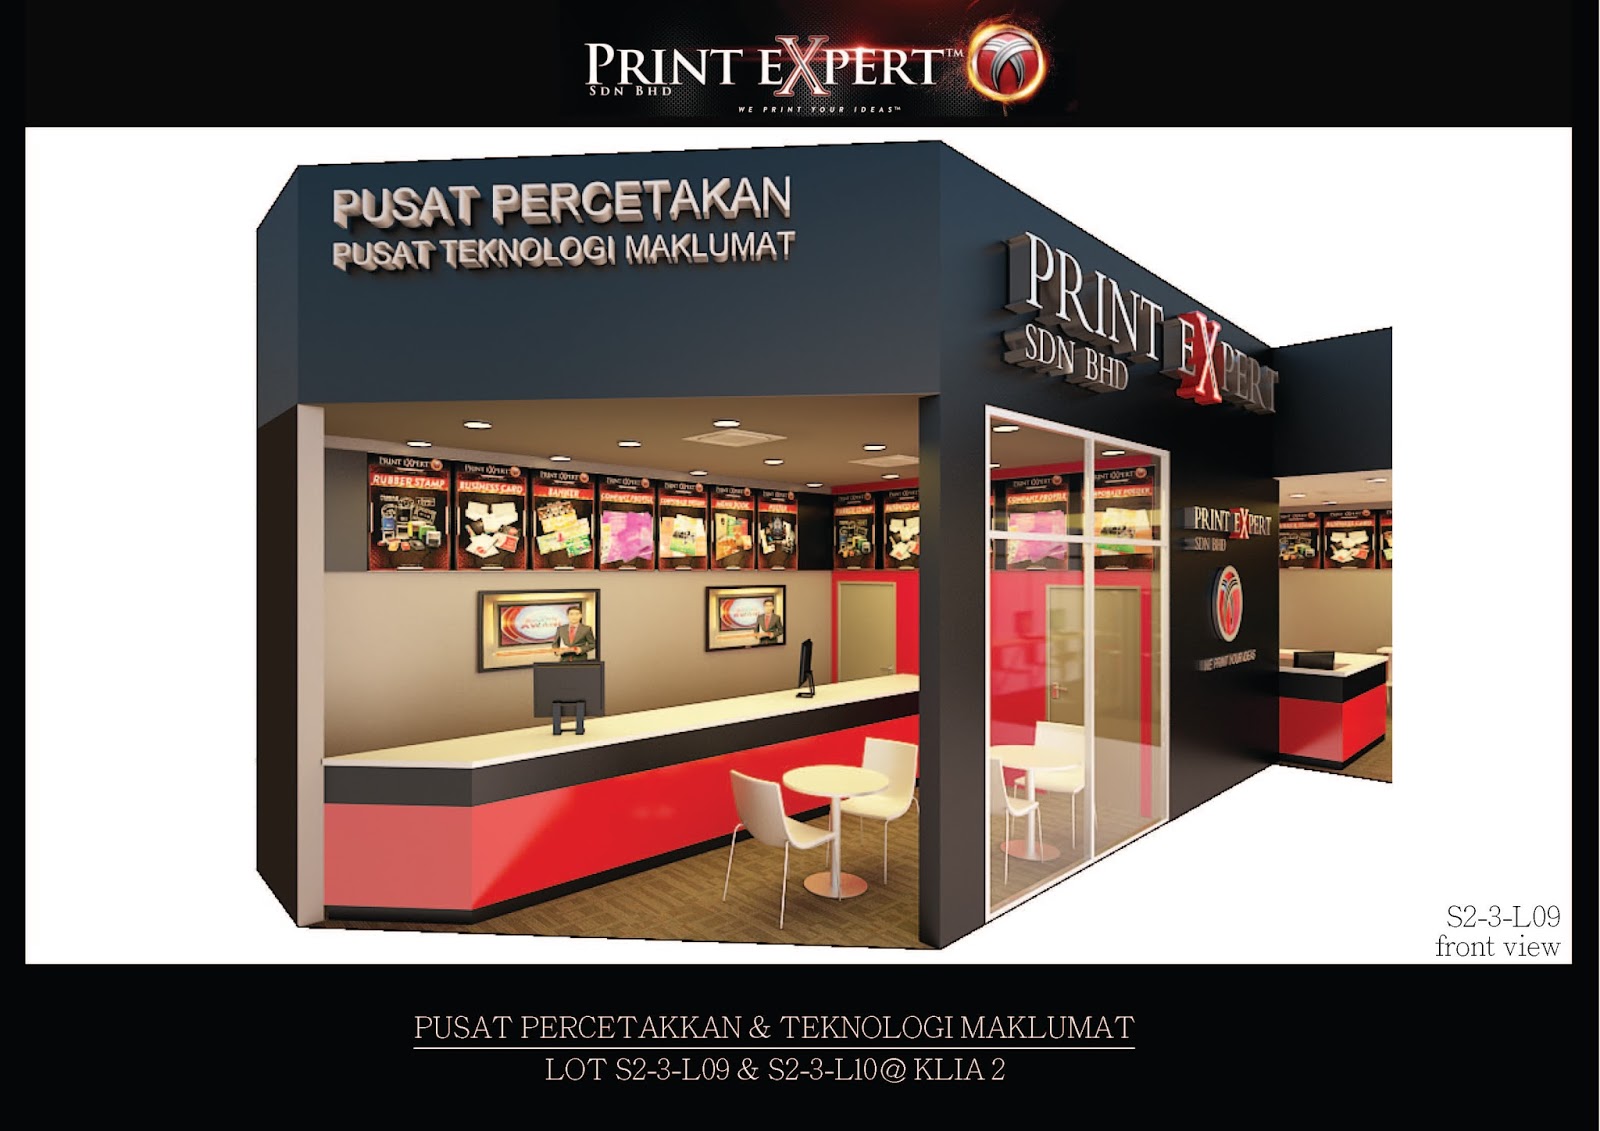 Print Expert Shah Alam / The best print shop in sek 7 so far, good